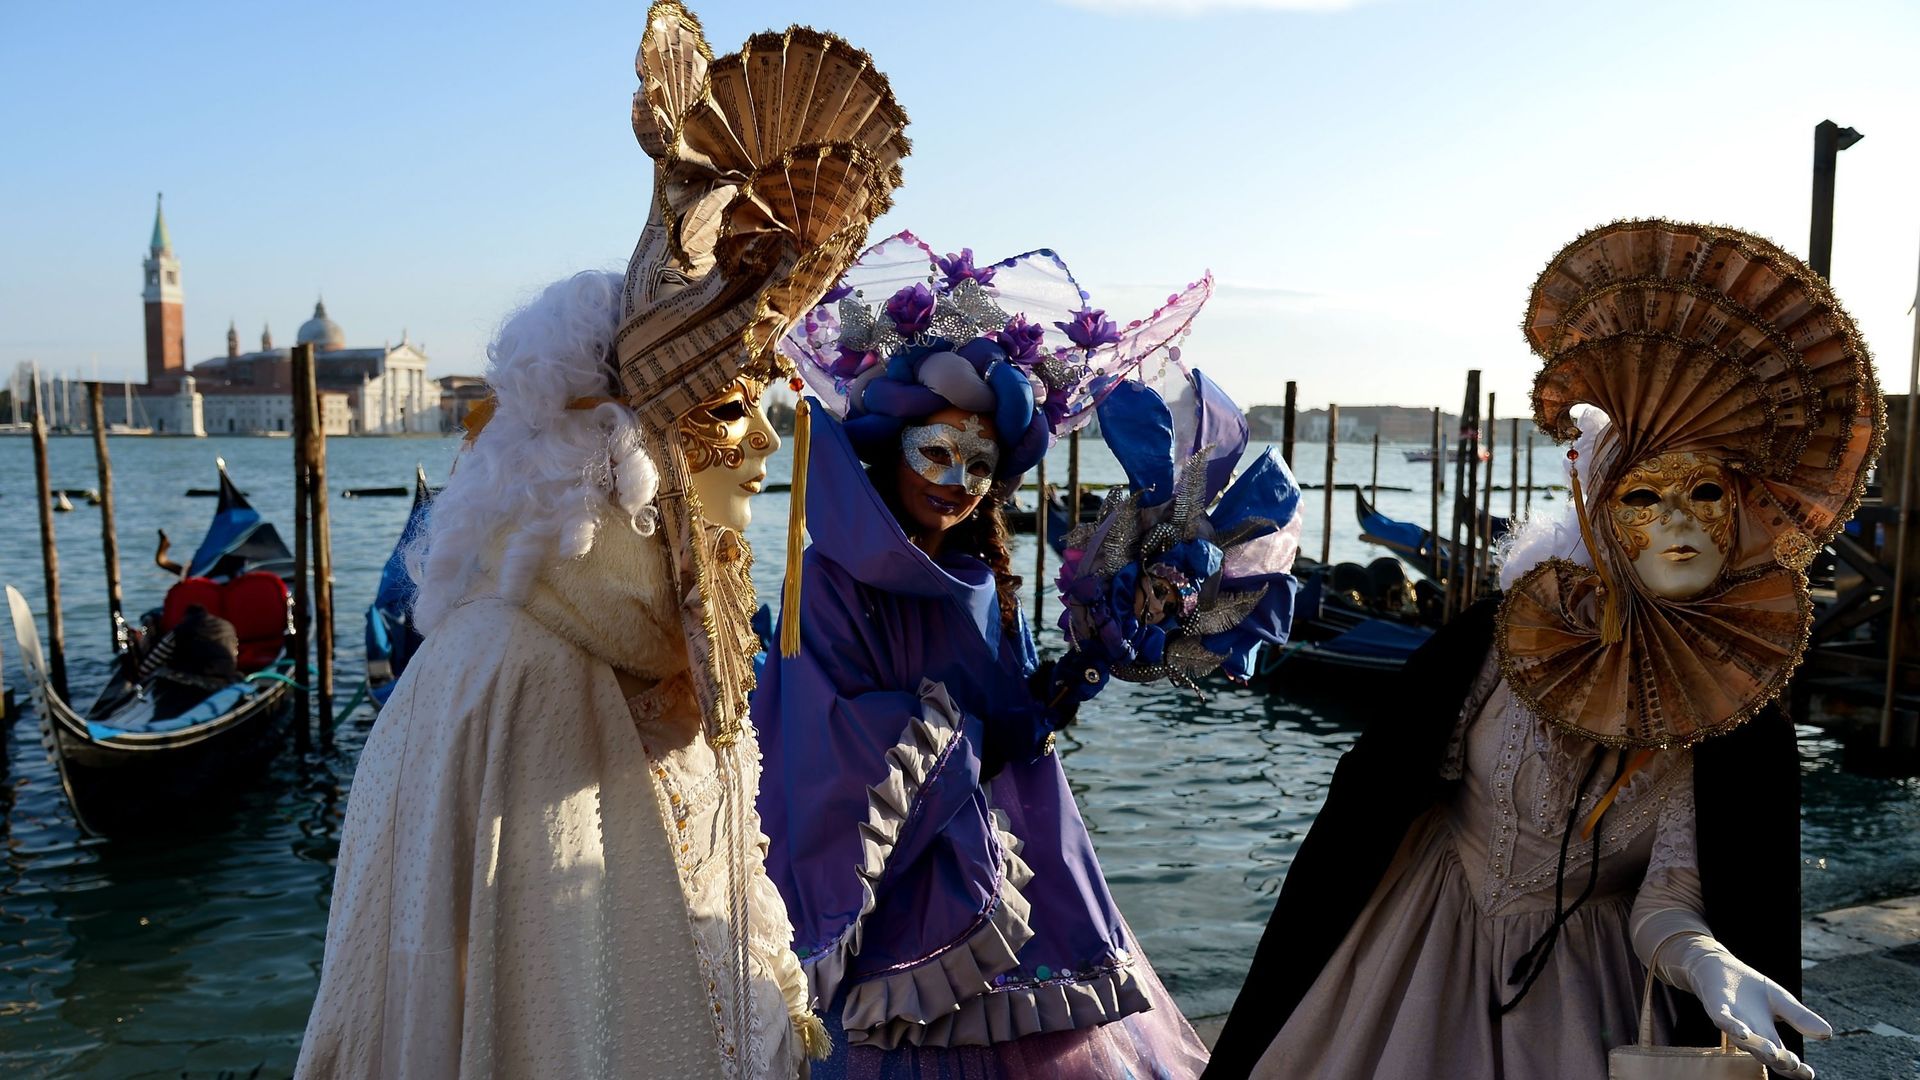 Venise donnera le coup d'envoi de la saison 2016 des carnavals dans le monde